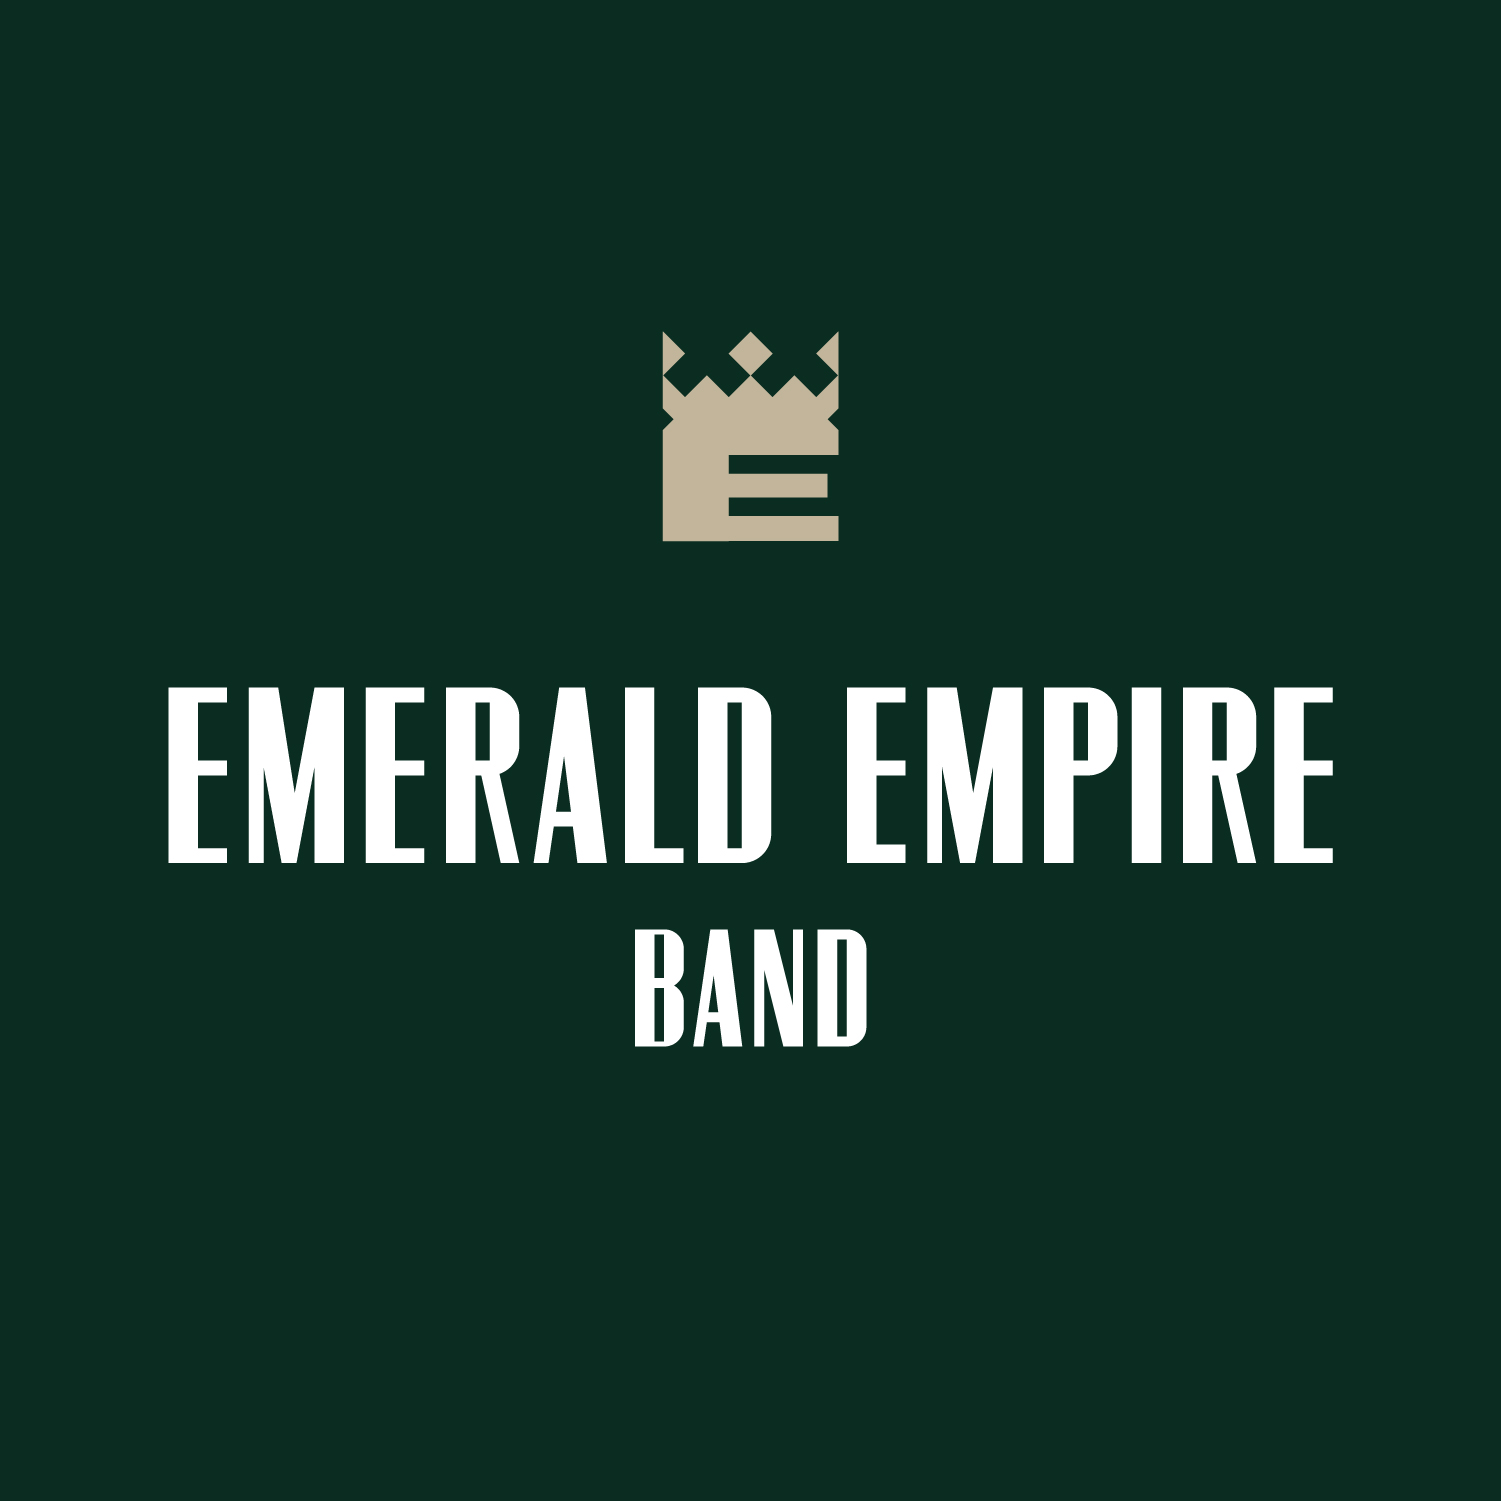 Emerald Empire Band logo